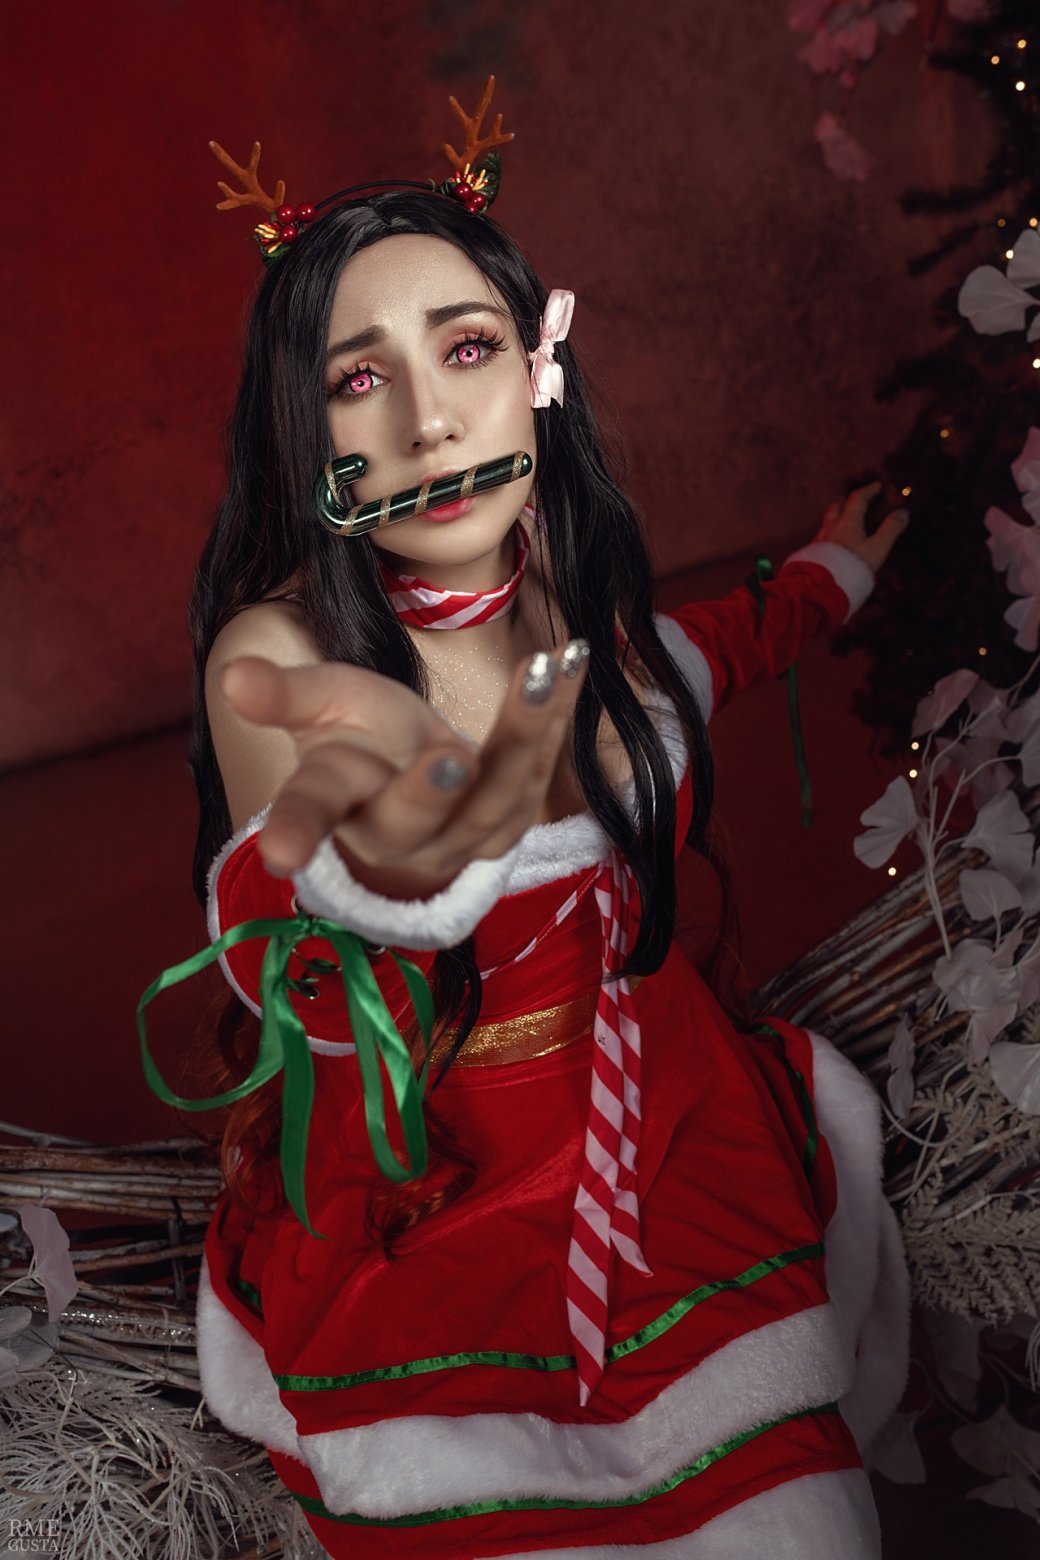 Галерея Косплеер показала образ новогодней Нэдзуко из «Истребителя демонов» - 14 фото